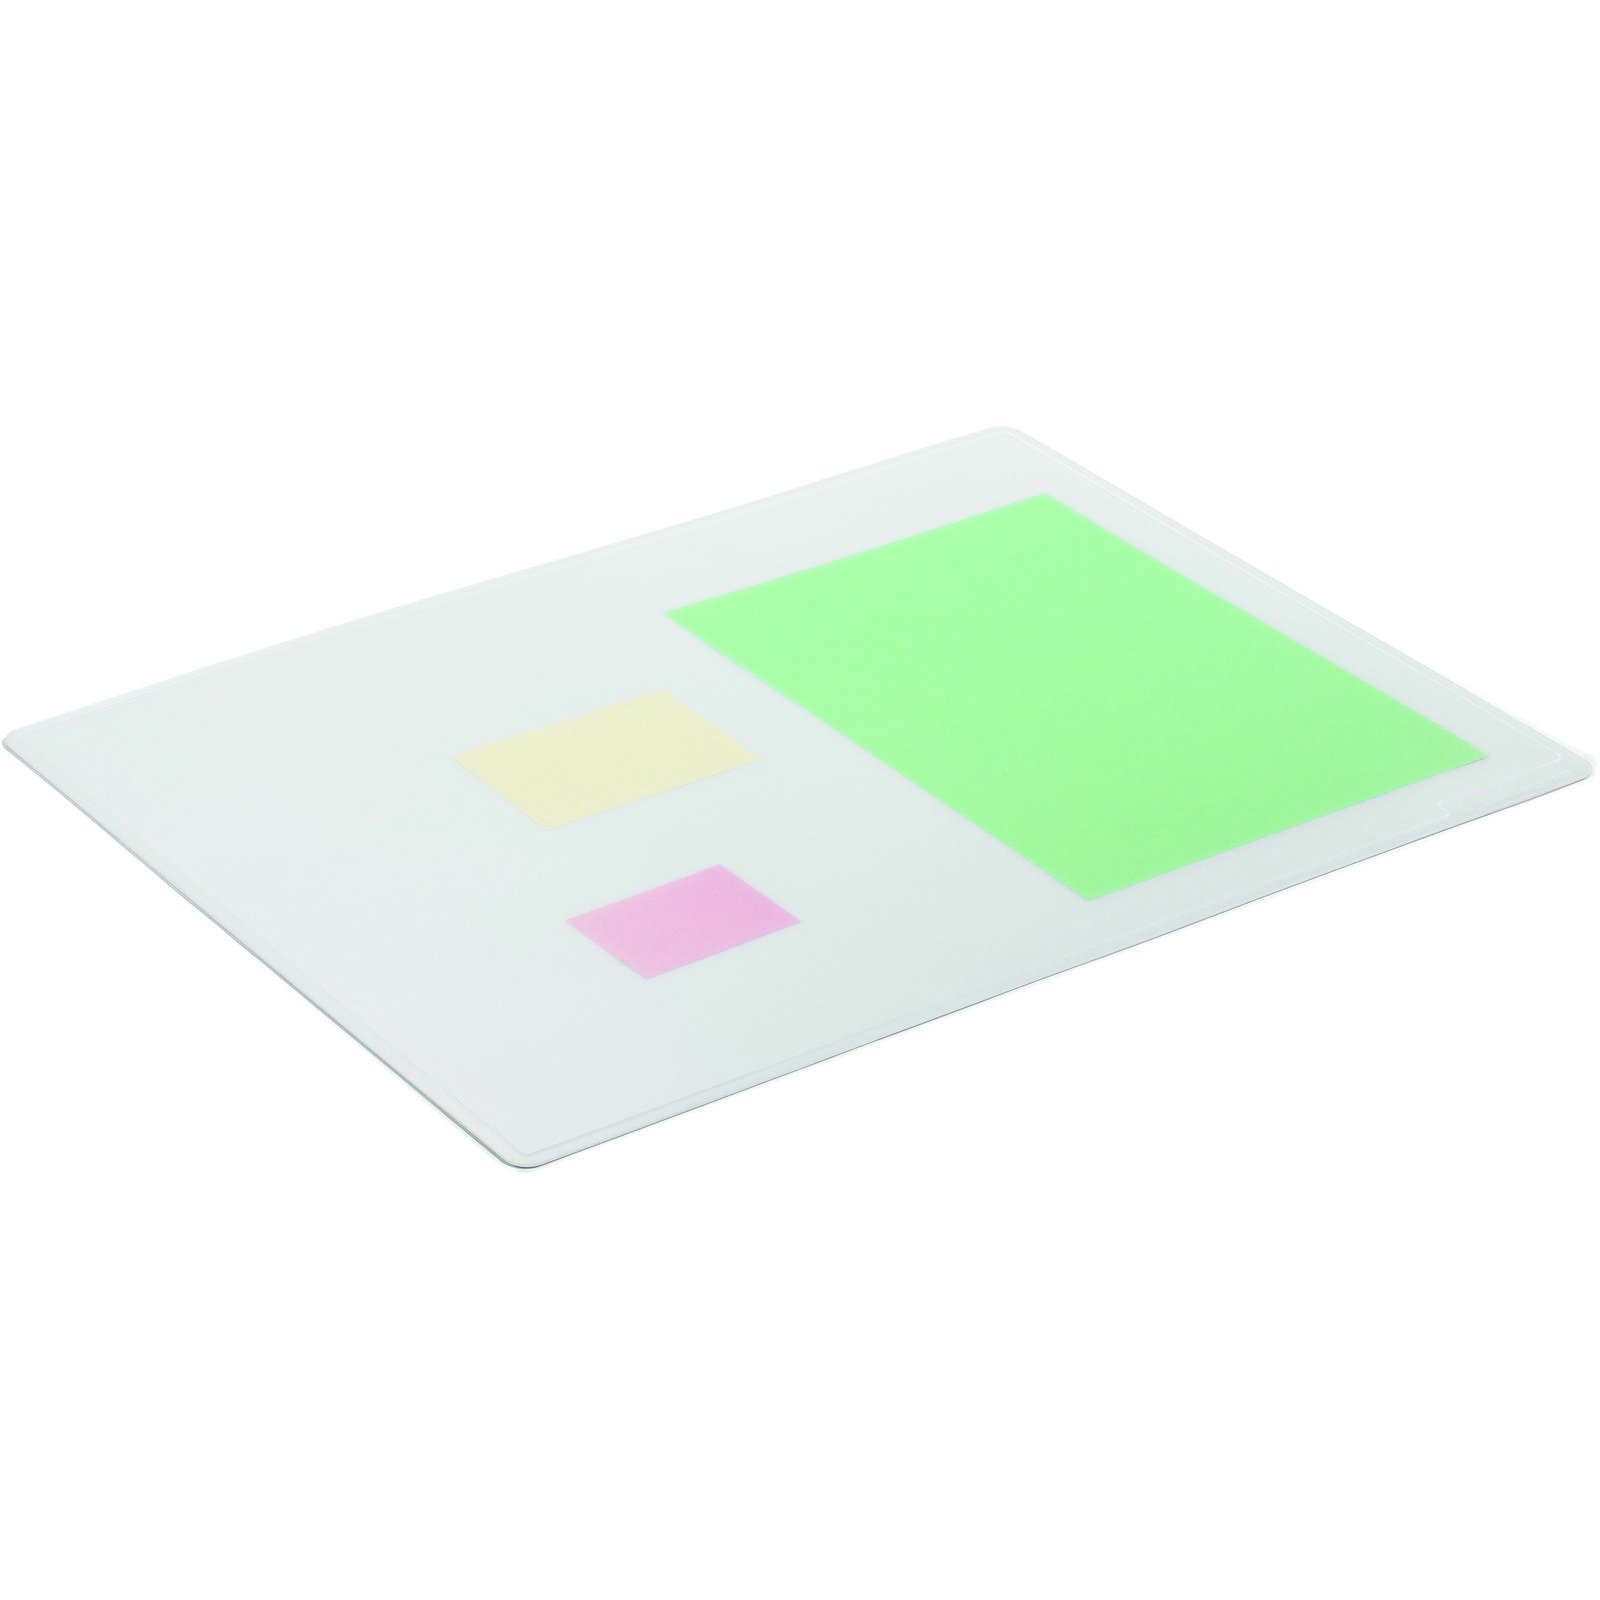 Durable skriveunderlag m/afrundede hjørner transparent PP plast 1 stk